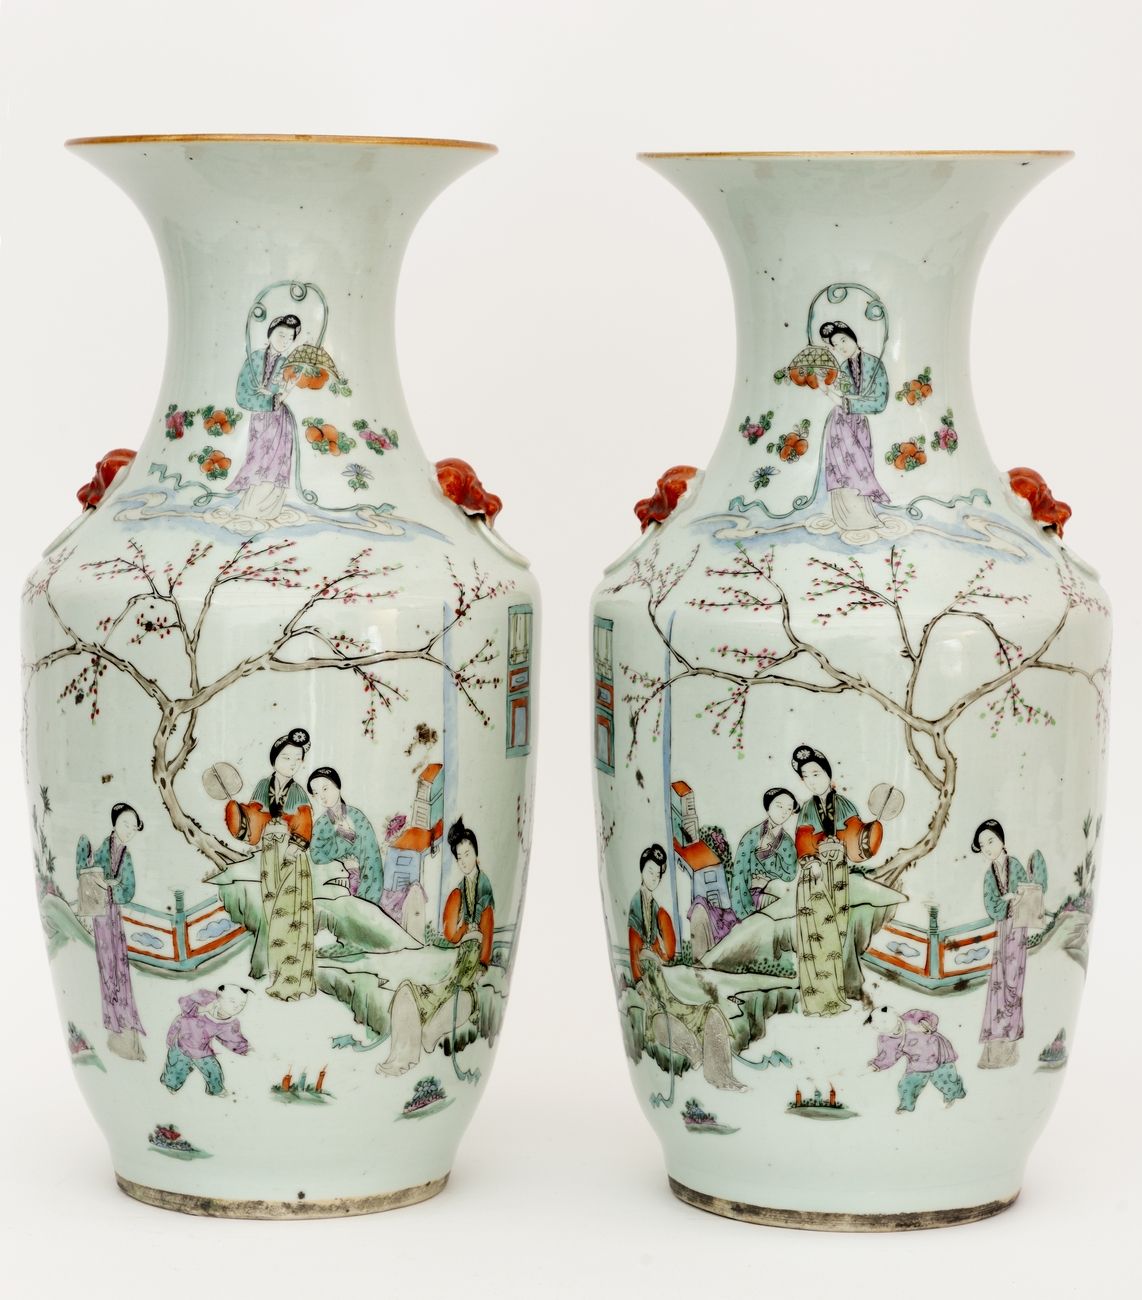 Null China, siglo XIX-XX
Un par de jarrones de porcelana con decoración de esmal&hellip;